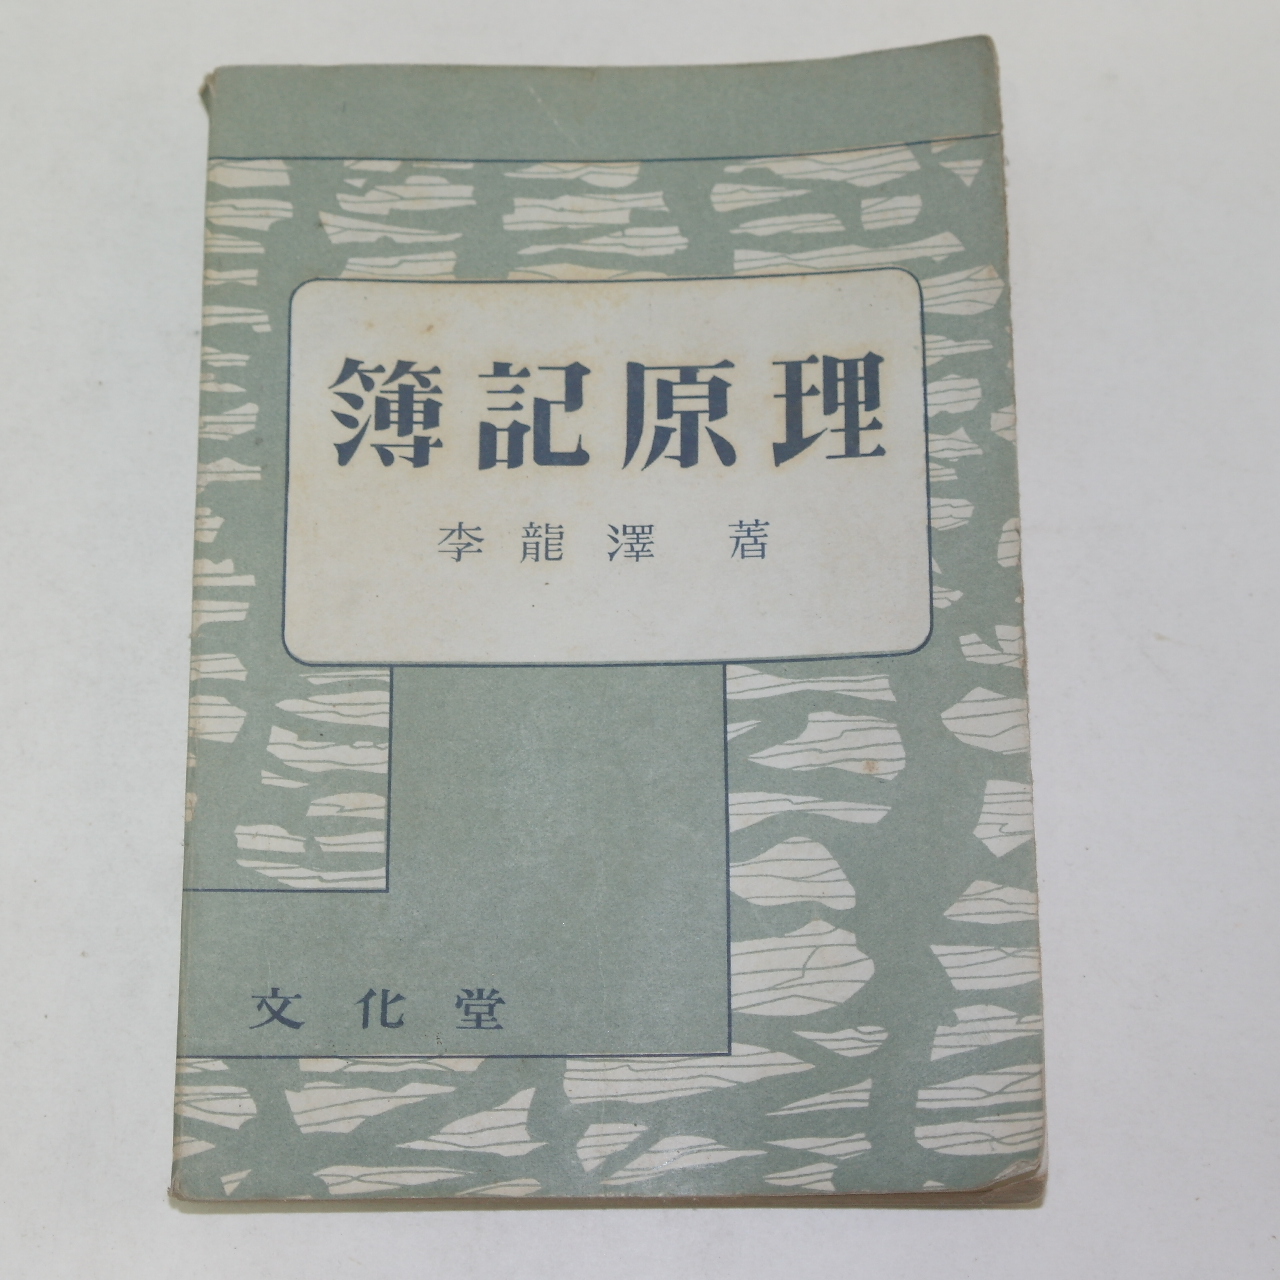 1957년 이용택(李龍澤) 부기원리